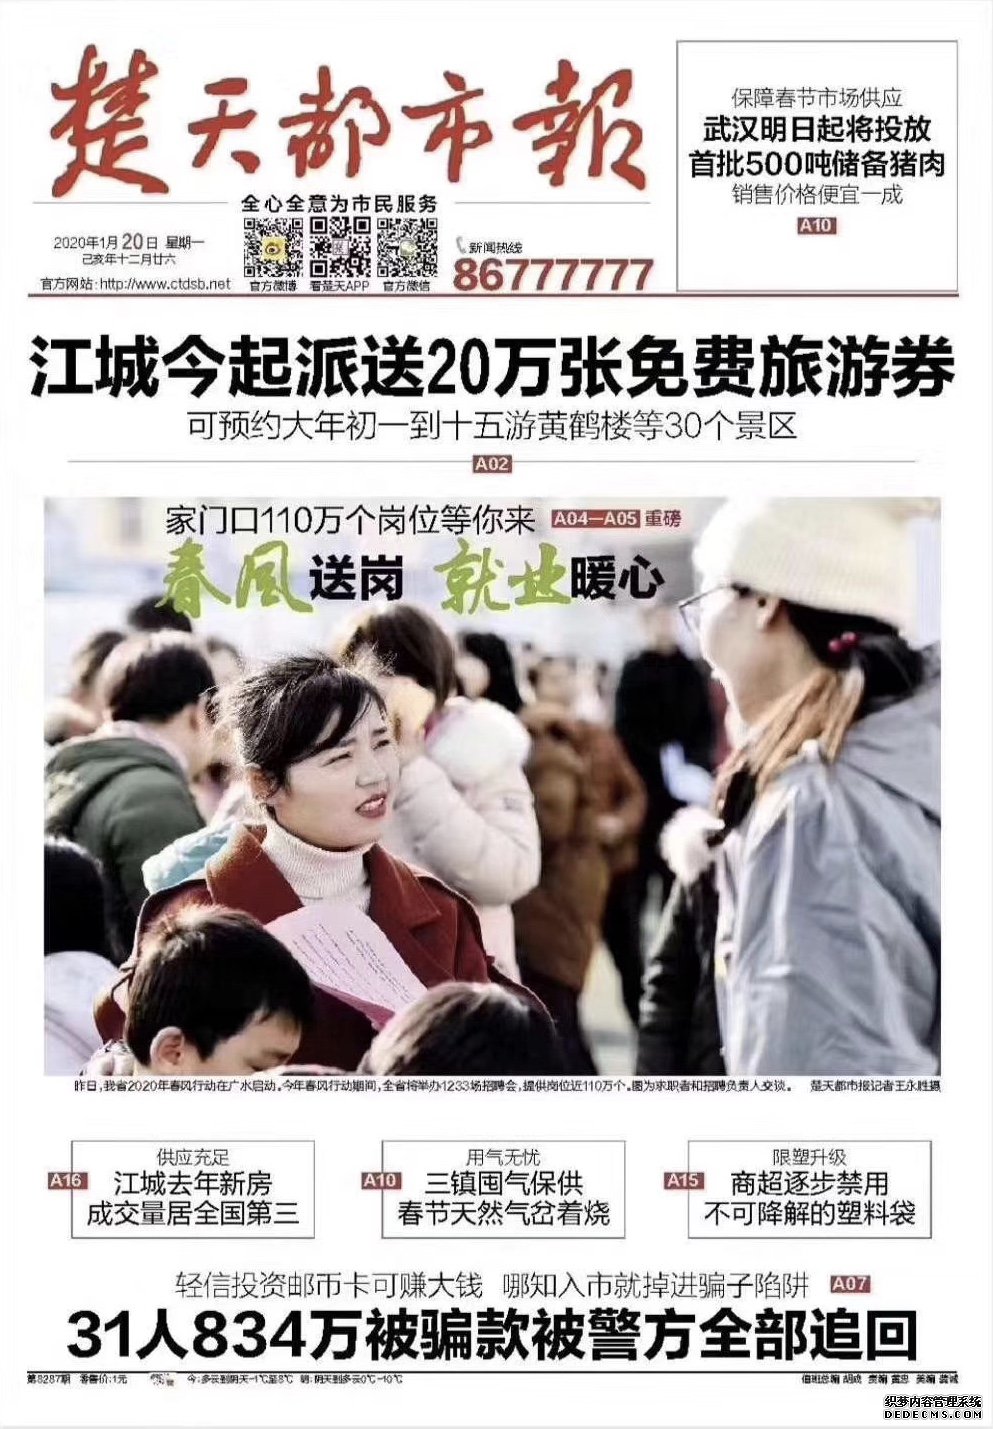 武汉旅游惠民活动延期 已发放逾3万张免费旅游券